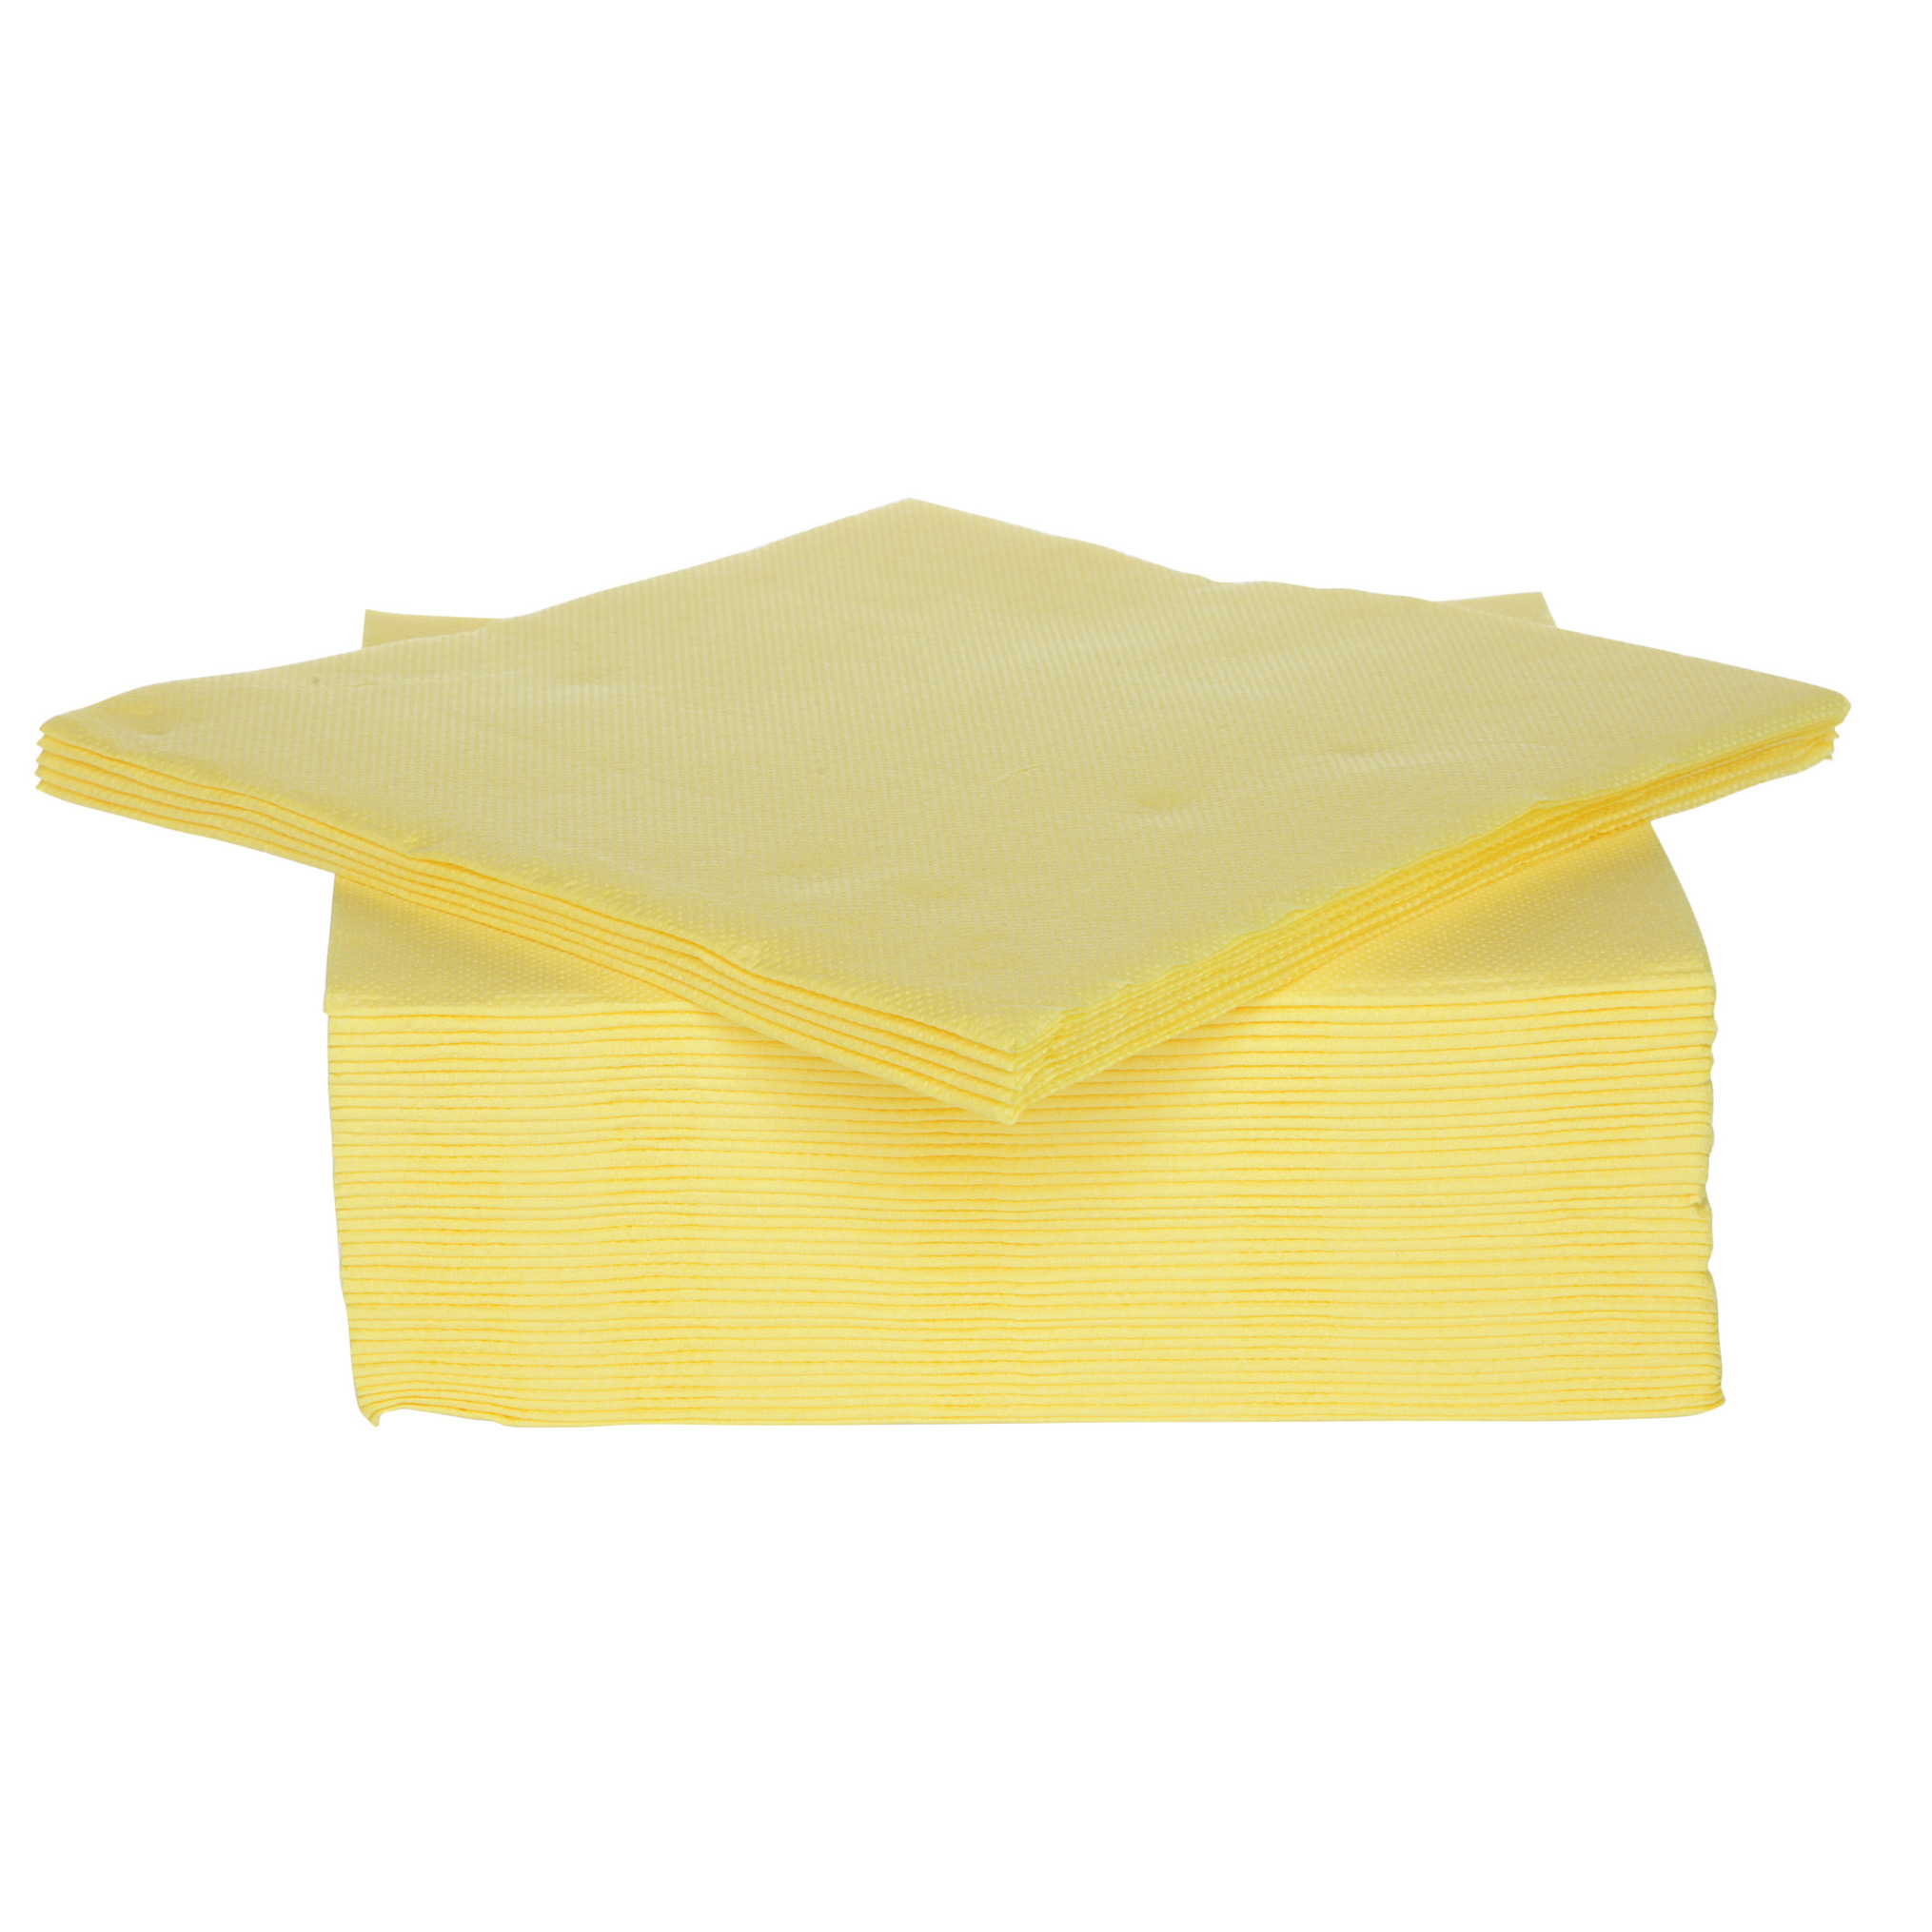 40x stuks luxe kwaliteit servetten geel 38 x 38 cm